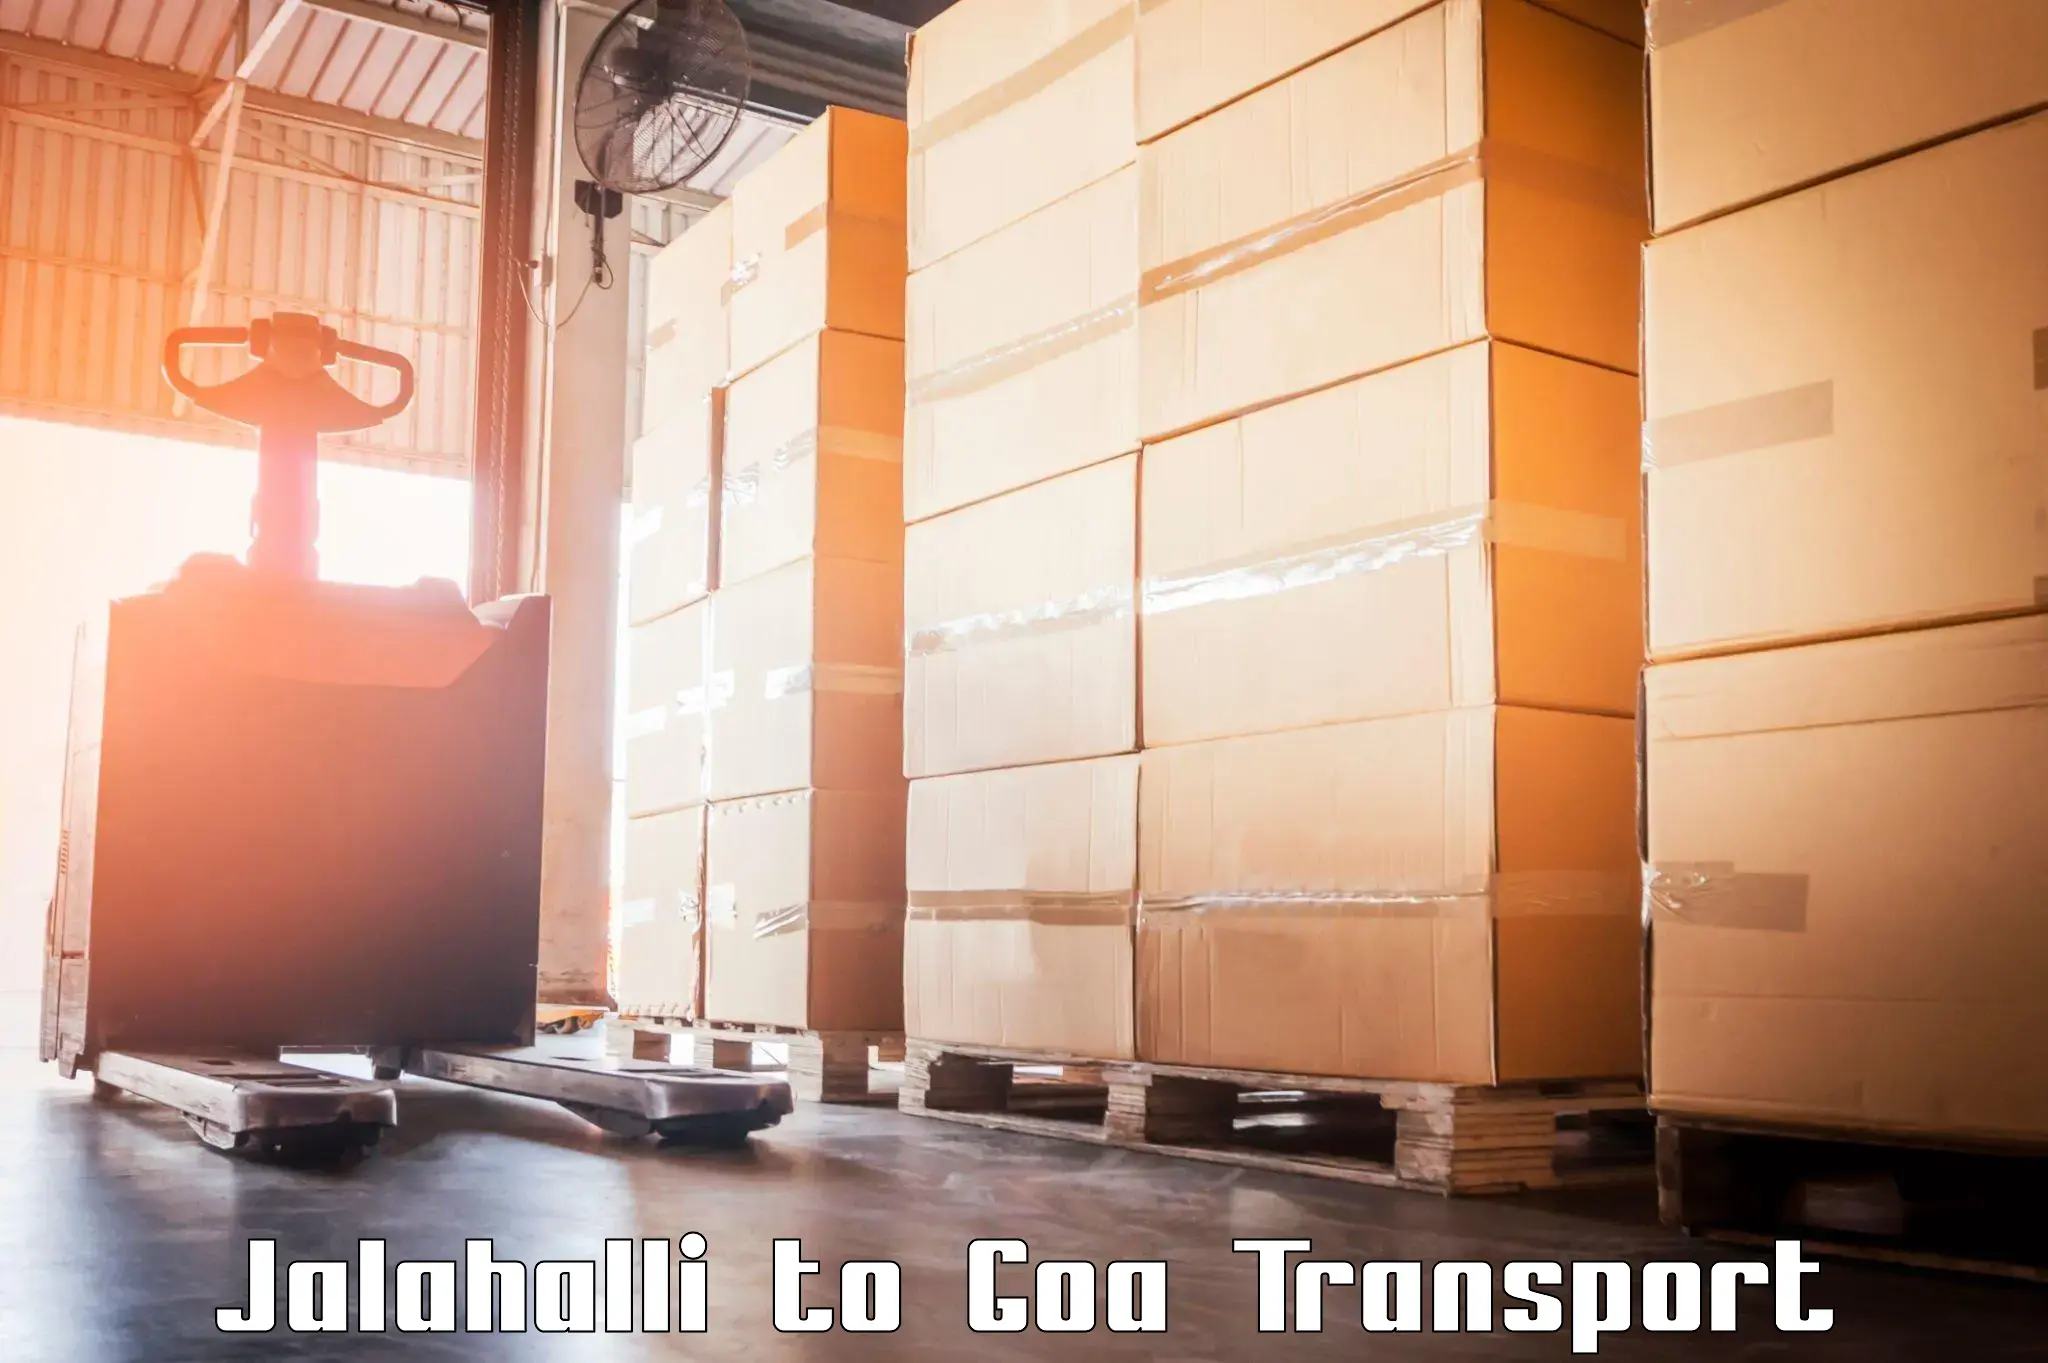 Express transport services Jalahalli to IIT Goa